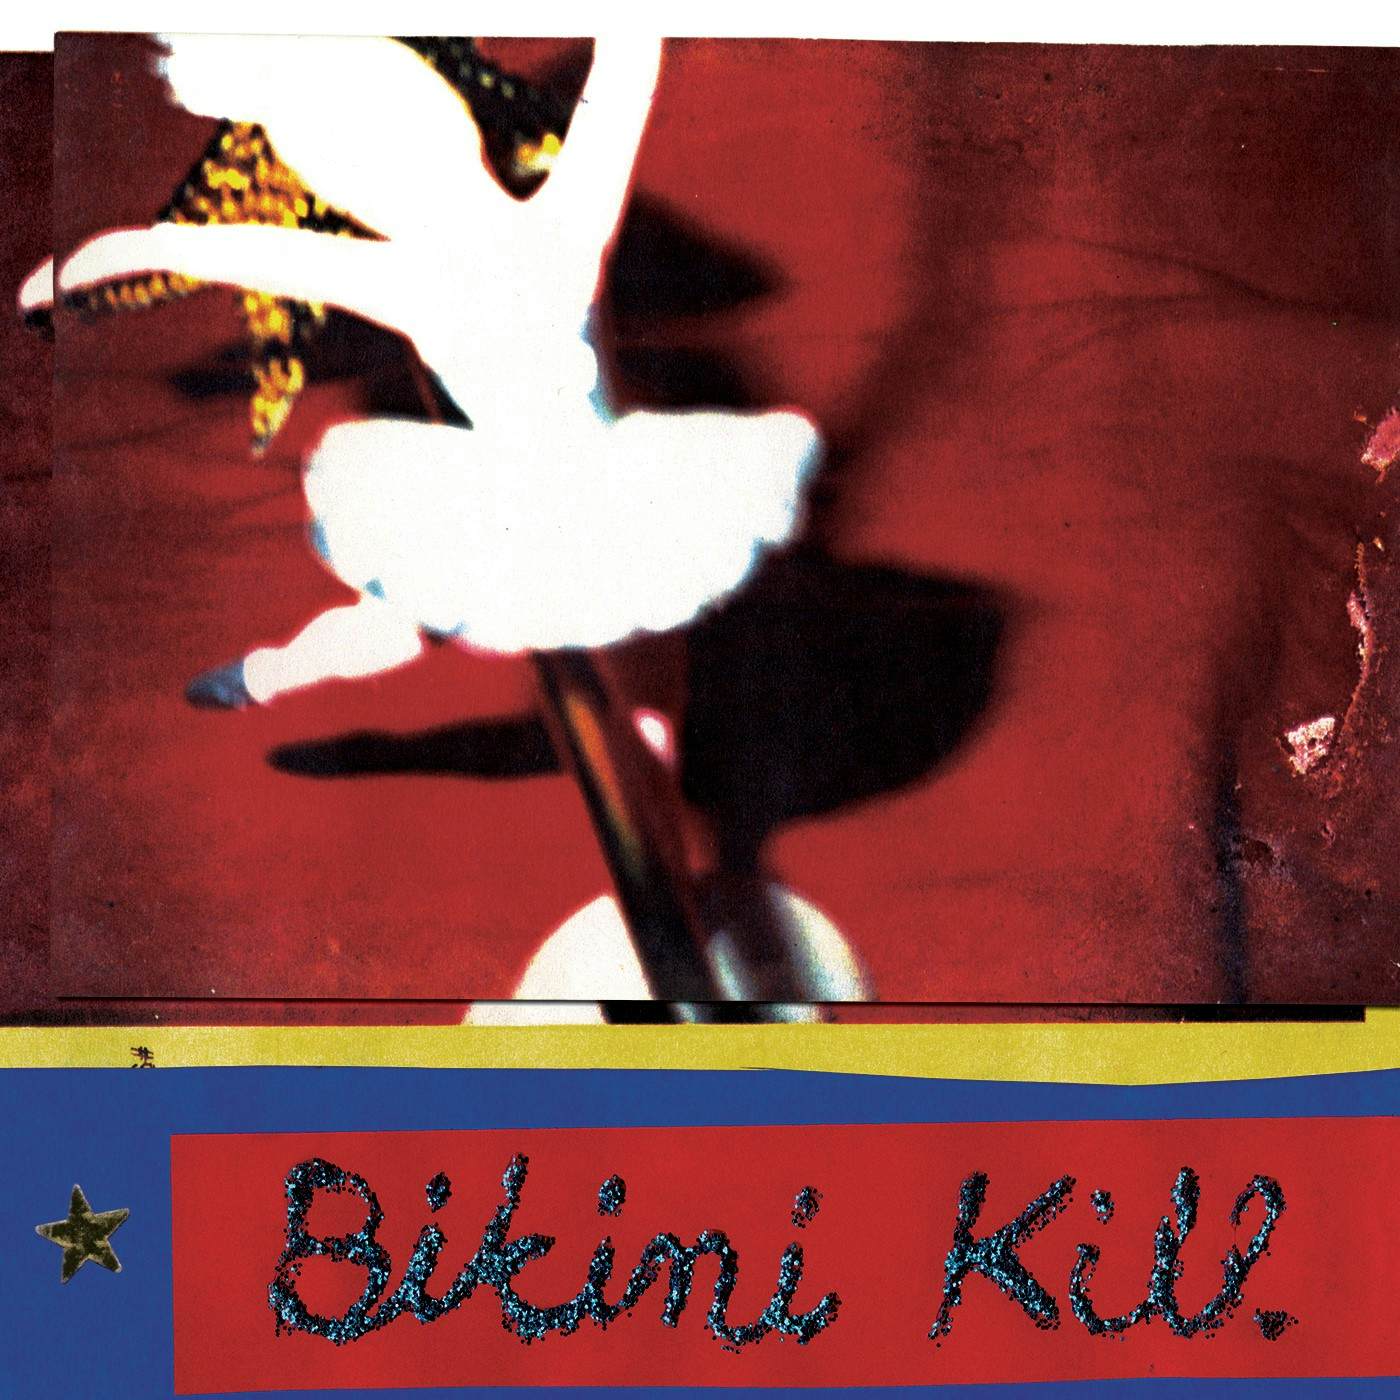 Bikini Kill New Radio Vinyl Record